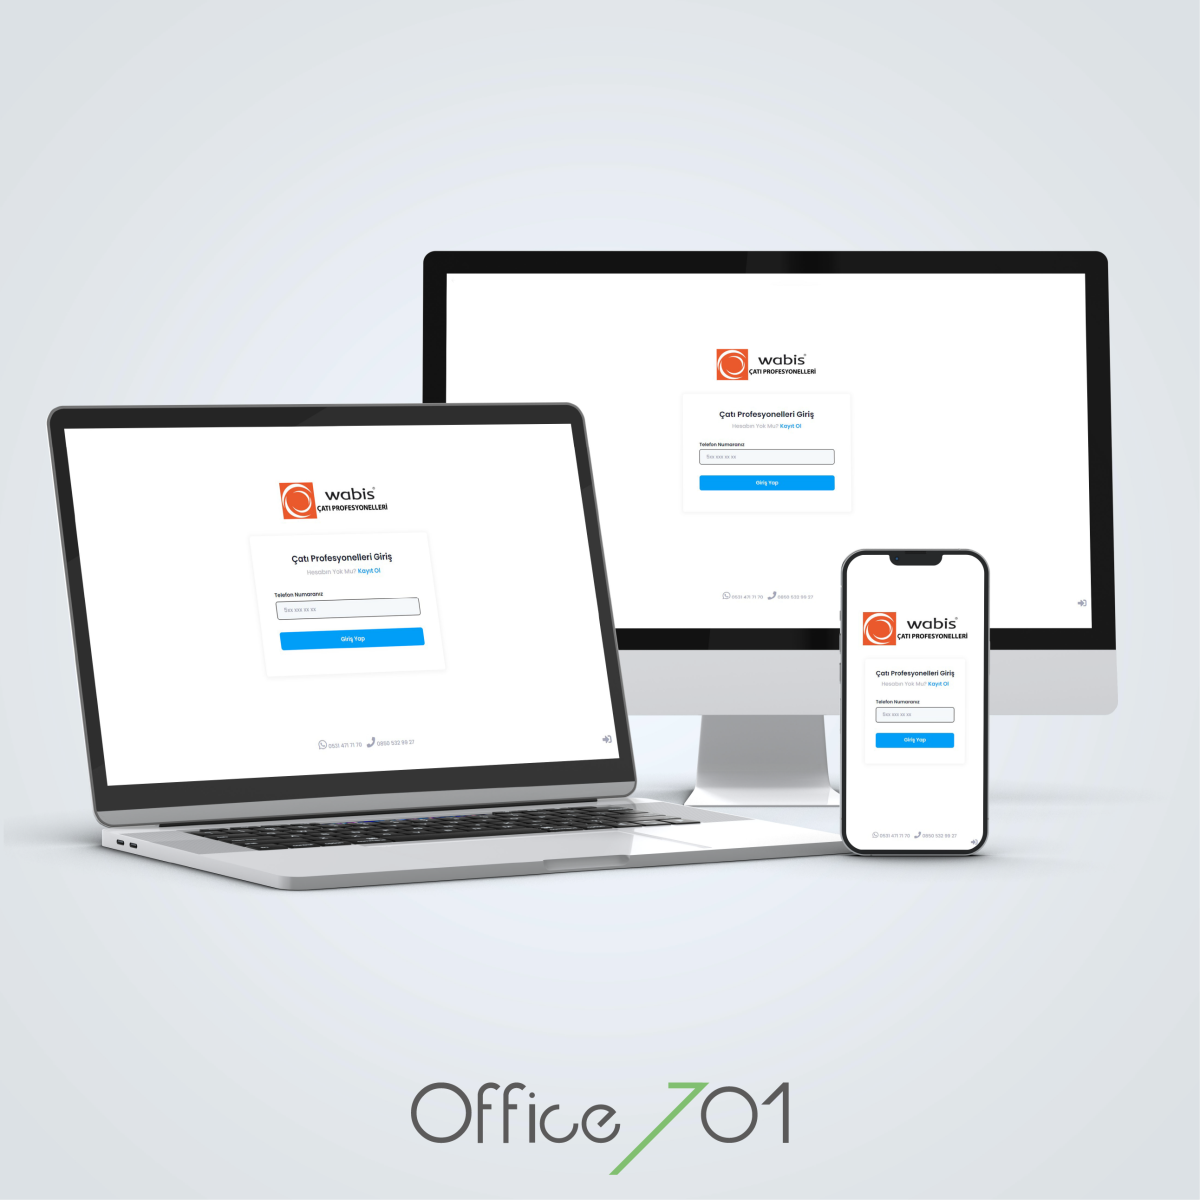 Office701 | Wabis Çatı Profesyonelleri Proje Yazılımı